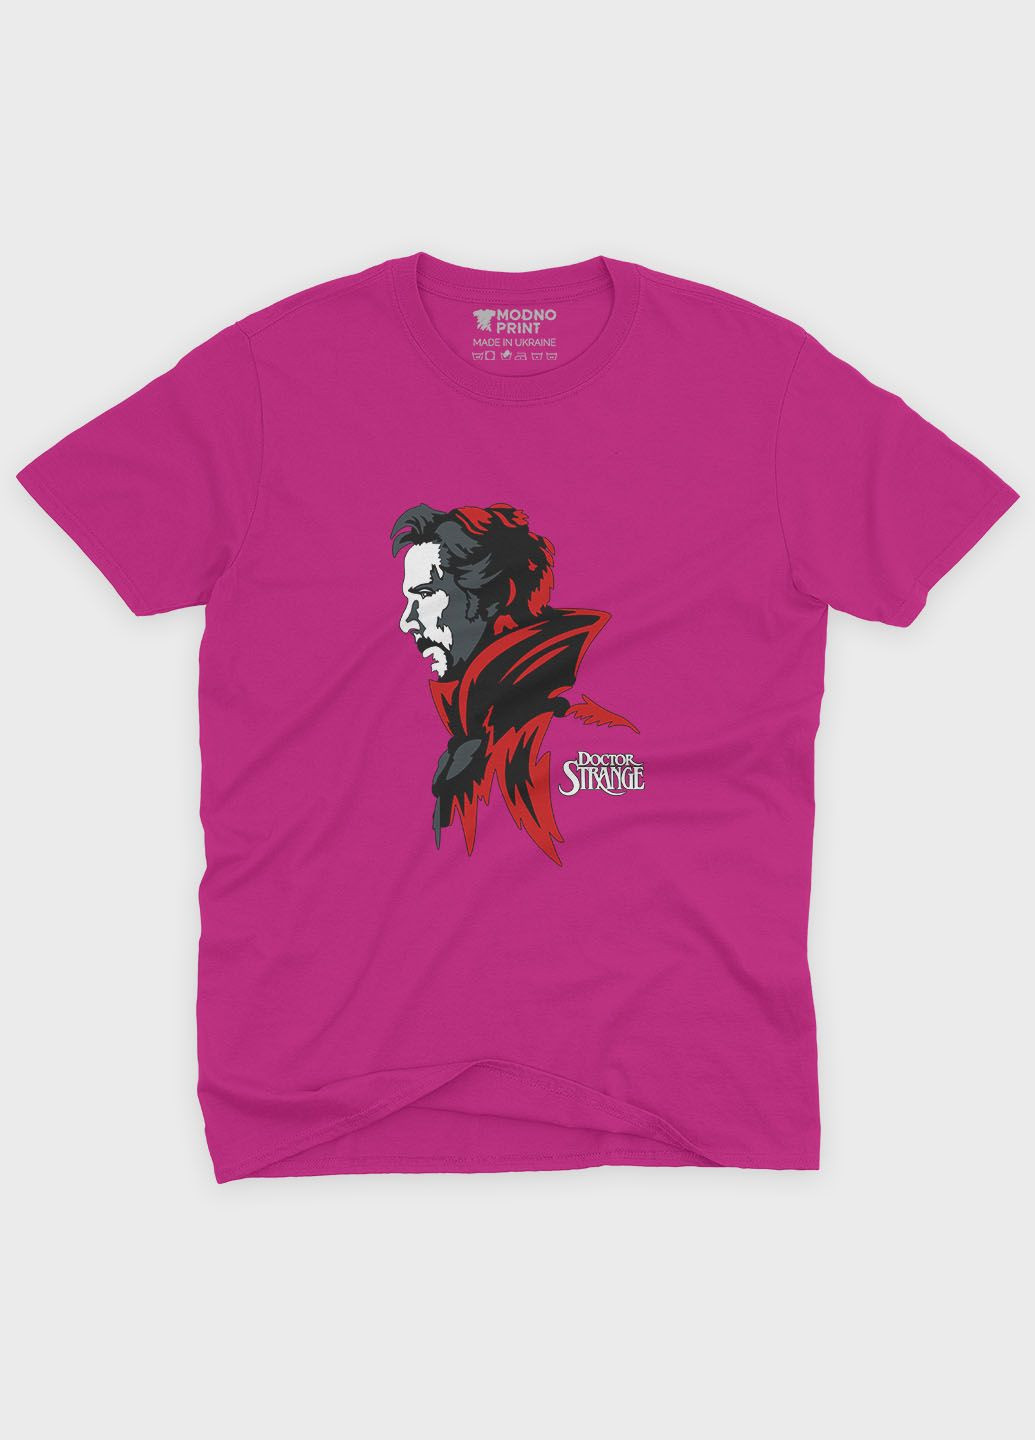 Розовая демисезонная футболка для девочки с принтом супергероя - доктор стрэндж (ts001-1-fuxj-006-020-001-g) Modno